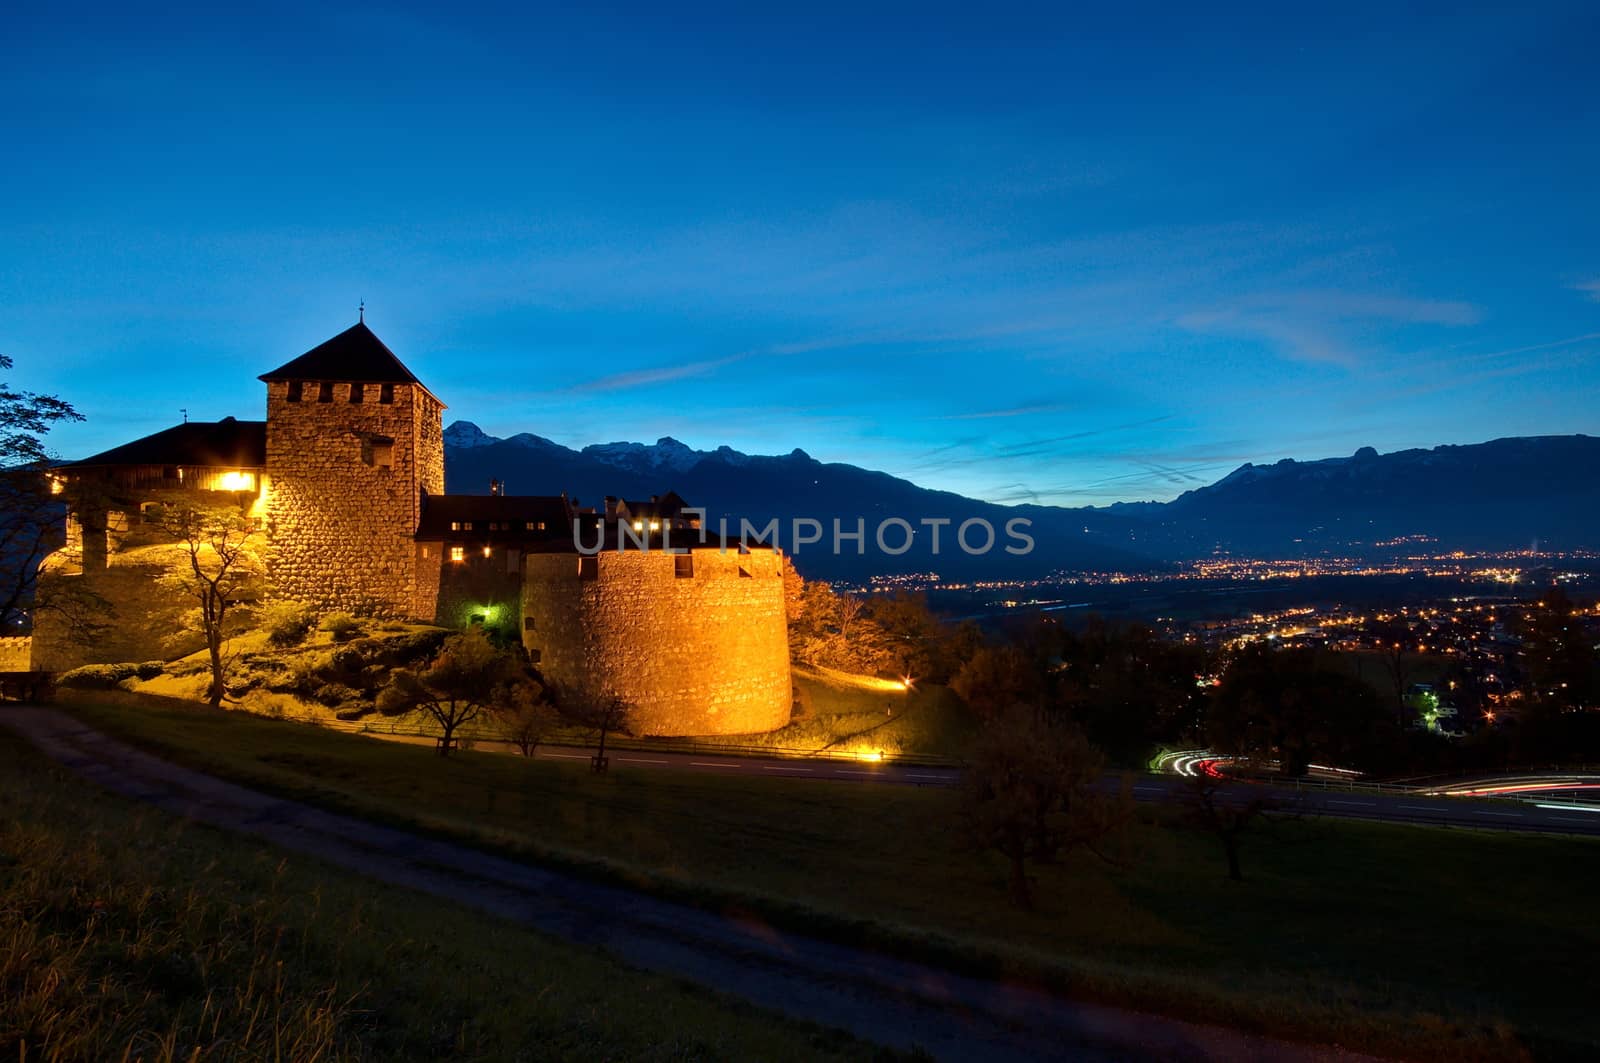 Castle of Vaduz in Liechtenstein at night